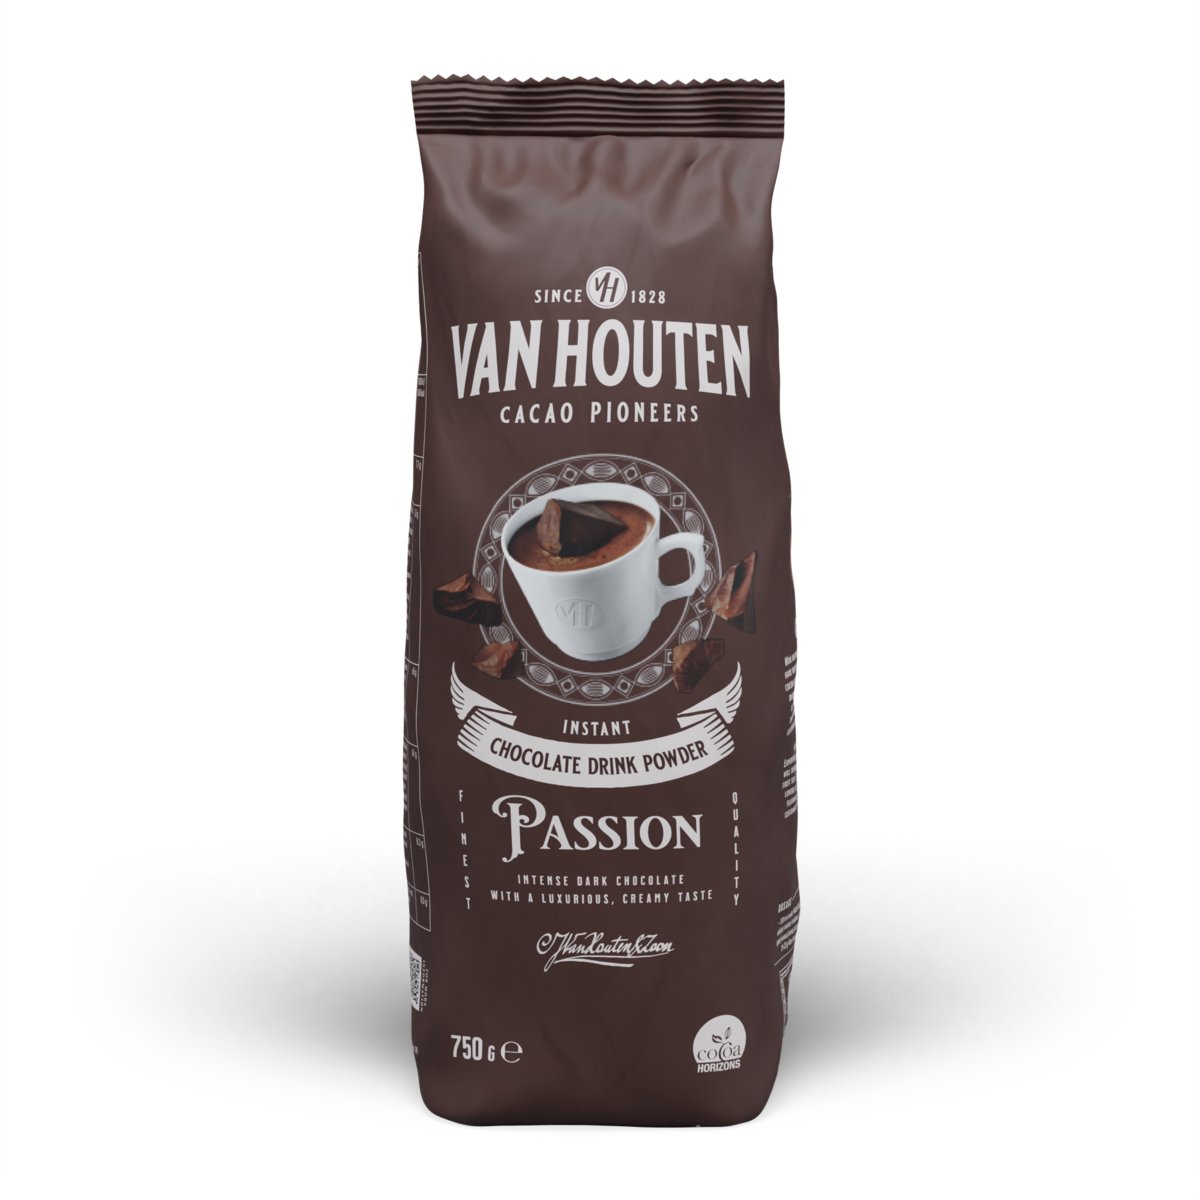 Van Houten Czekolada deserowa do picia na gorąco Passion 33% 750g